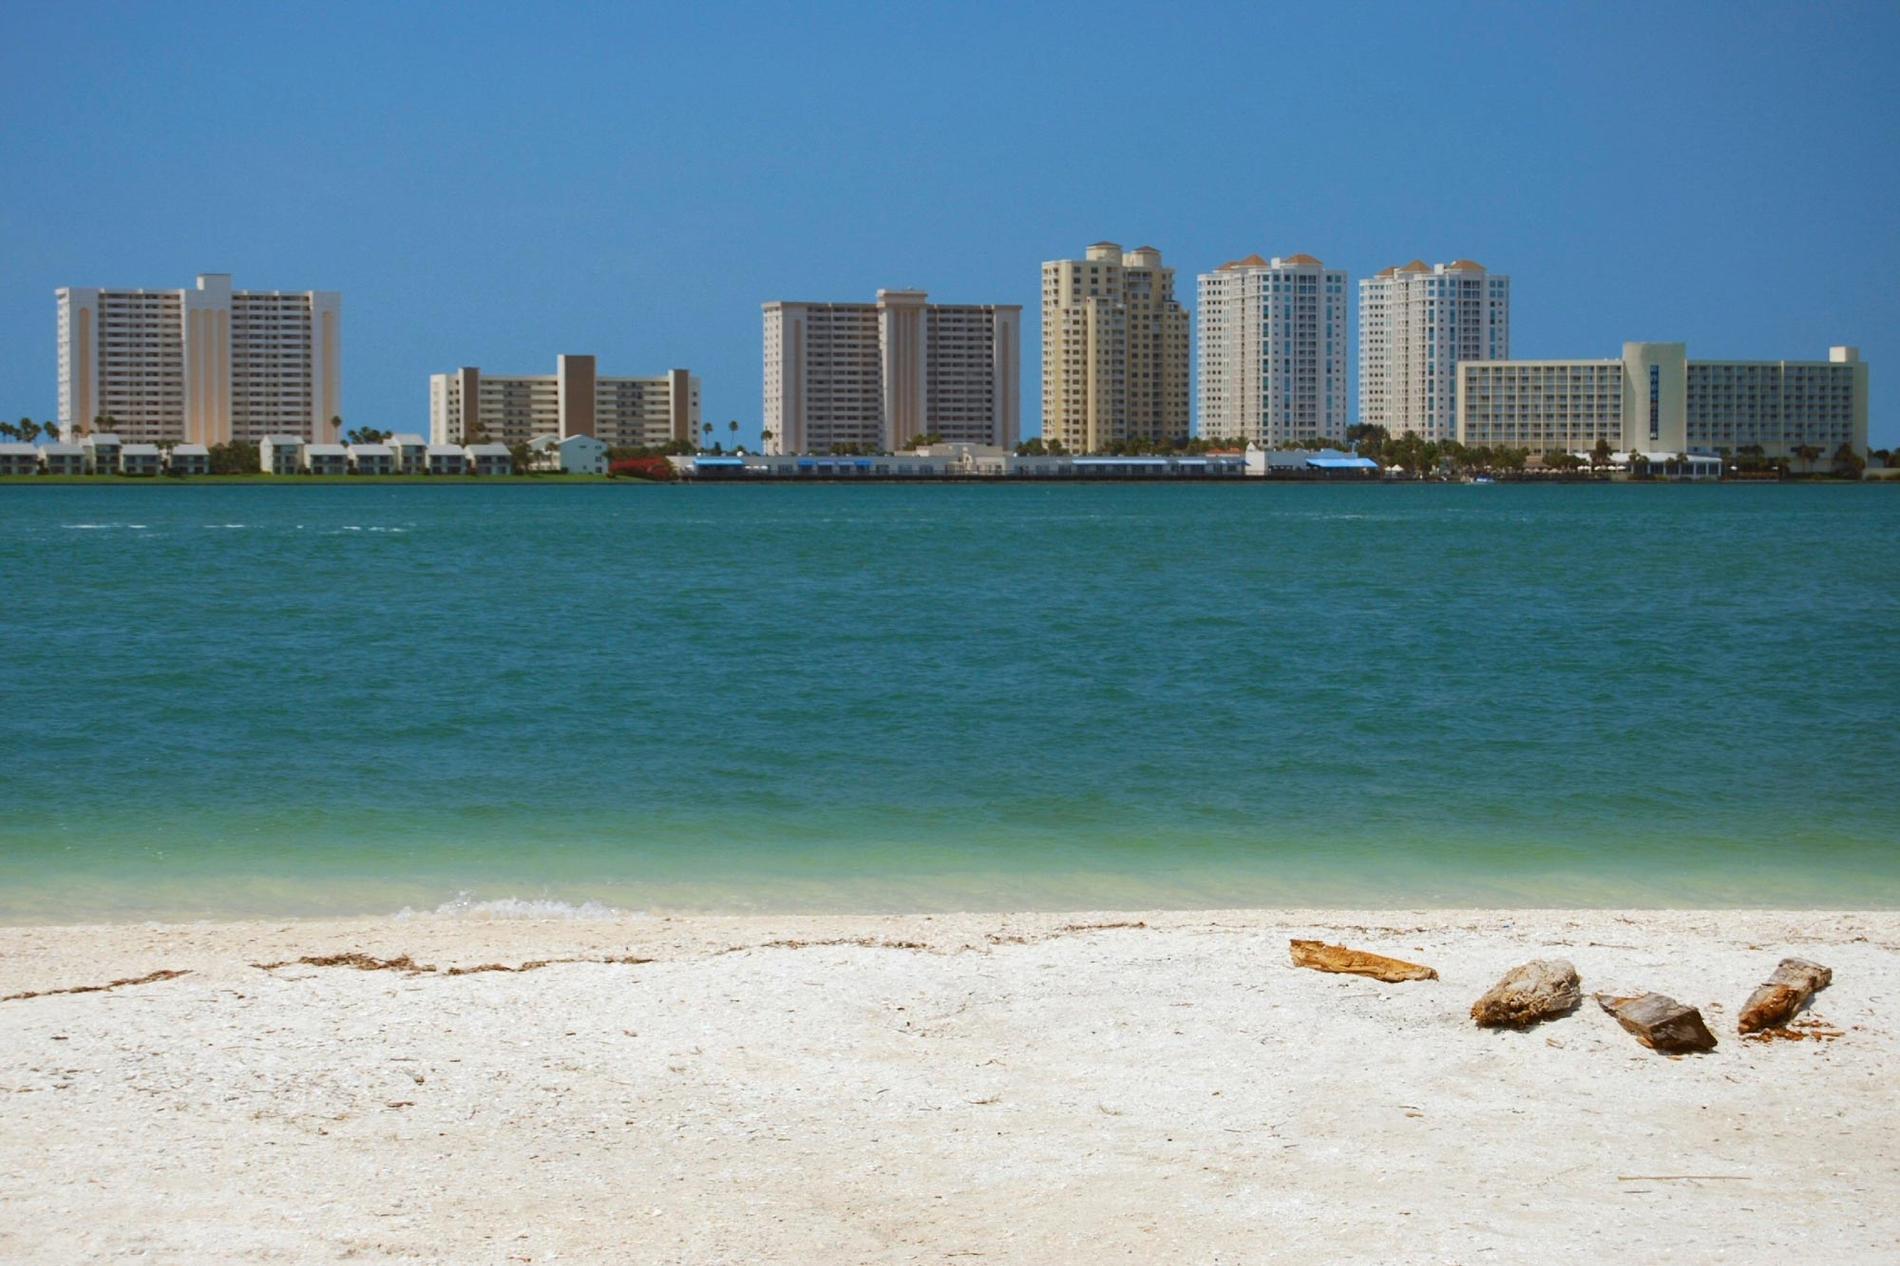 23. Clearwater, Florida Clearwater, utanför Tampa på Floridas västkust, har en bred och fin strand där det sällan blir trångt. Sök flyg till Florida